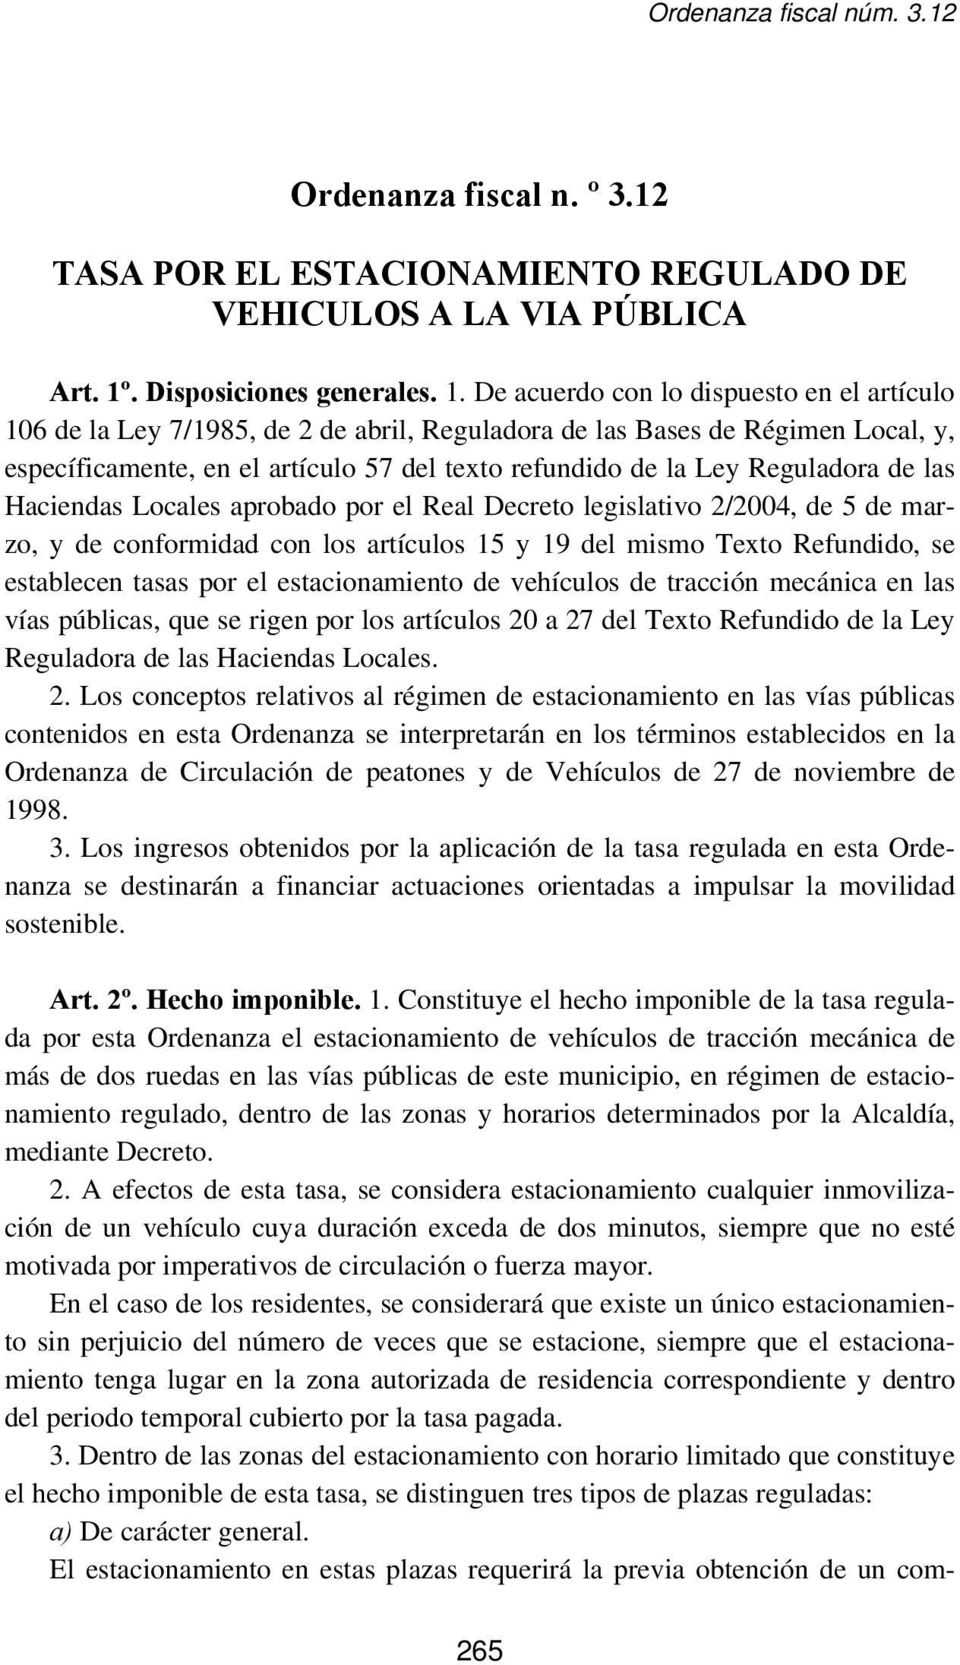 De acuerdo con lo dispuesto en el artículo 106 de la Ley 7/1985, de 2 de abril, Reguladora de las Bases de Régimen Local, y, específicamente, en el artículo 57 del texto refundido de la Ley